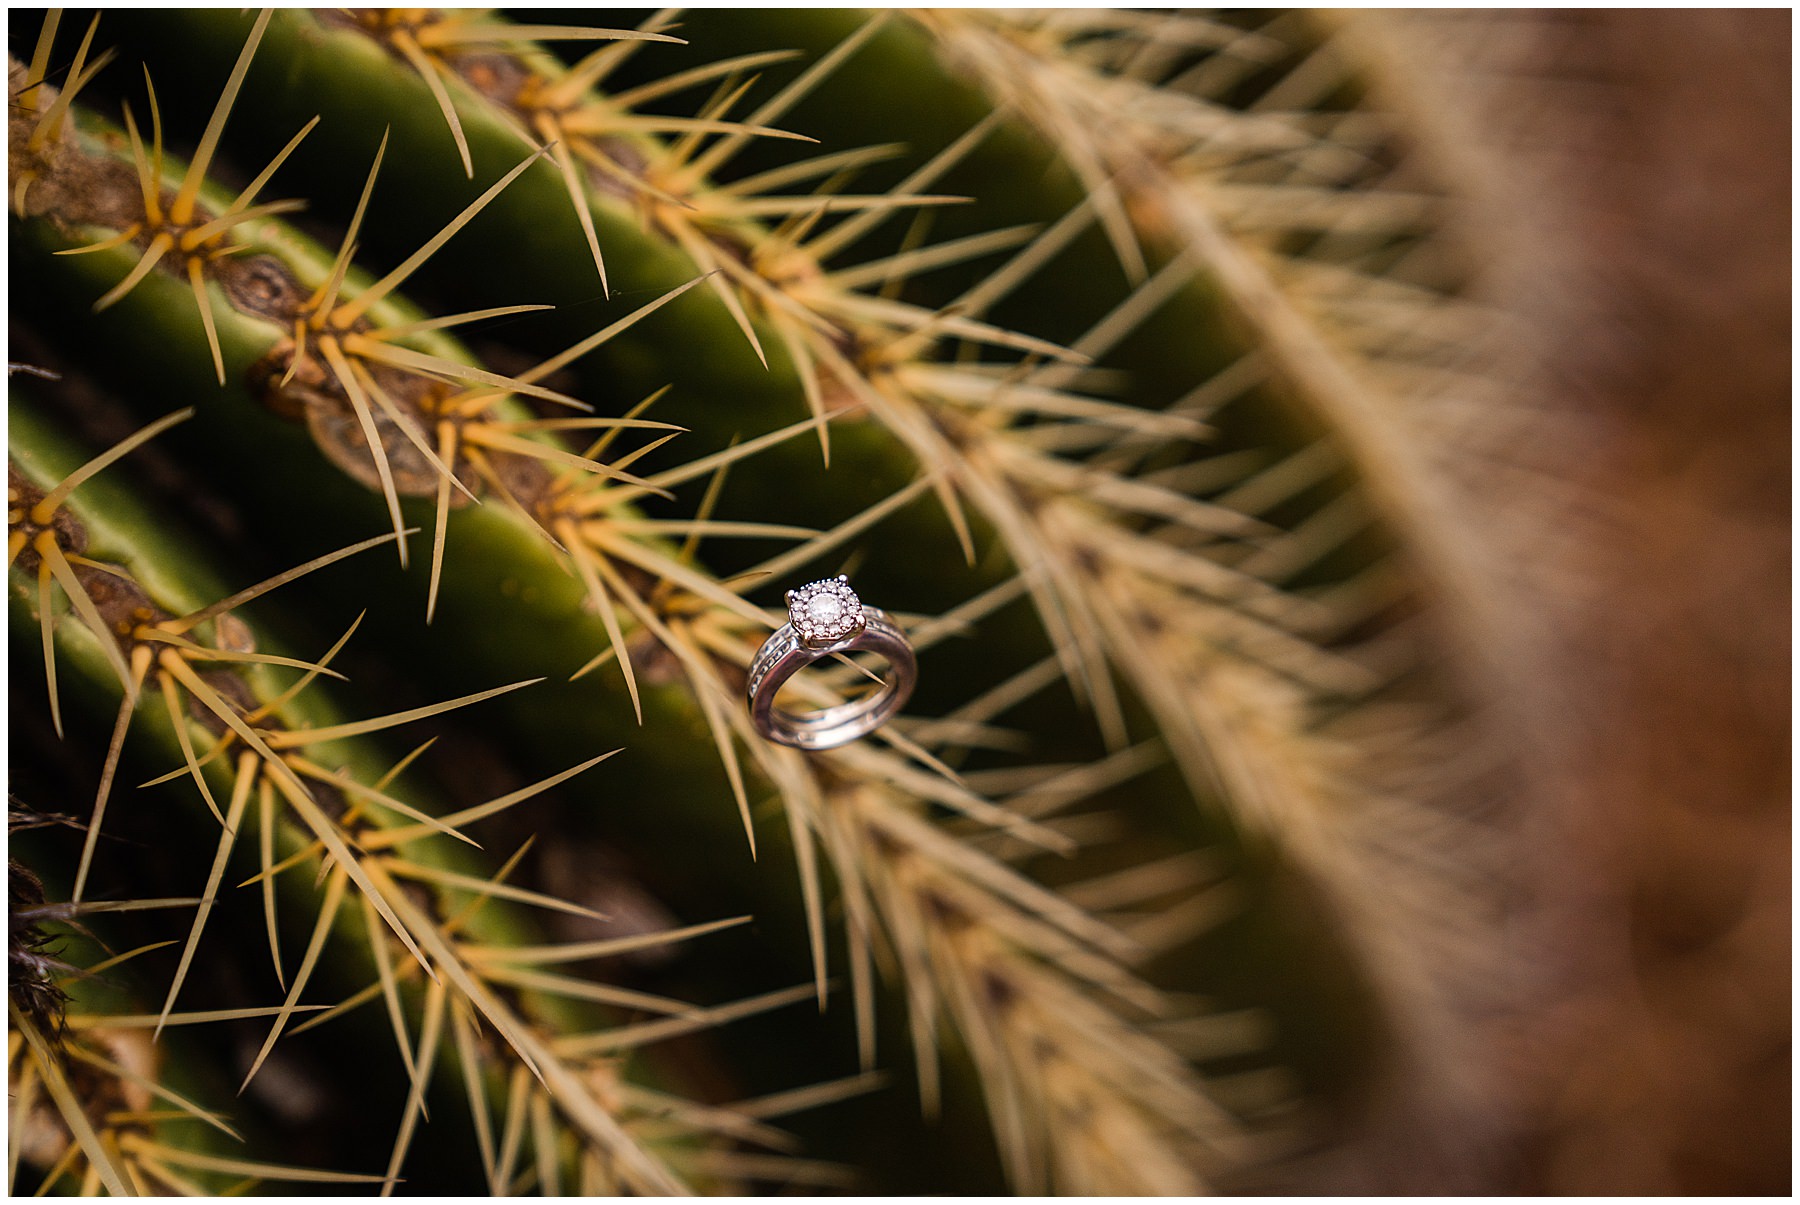 Wedding ring detail shot on cactus plant